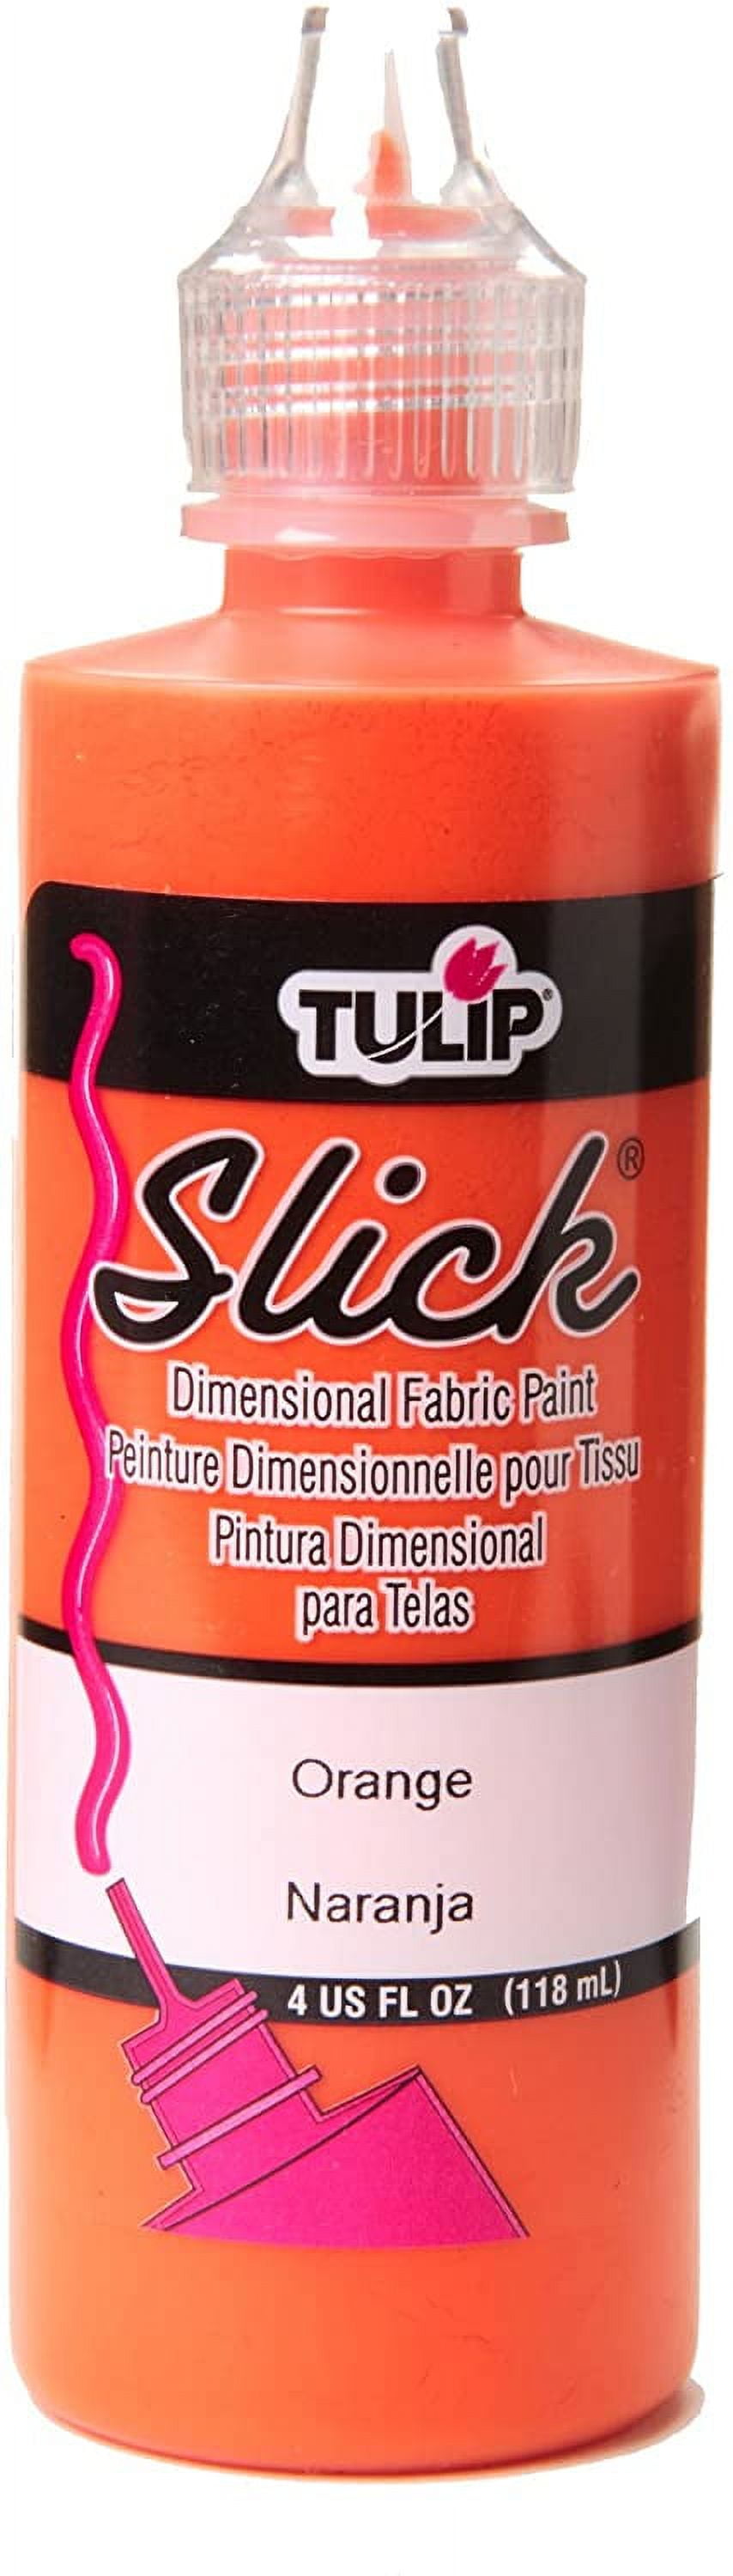 Tulip Soft Dimensional Fabric Paint Set - 10 Pieces